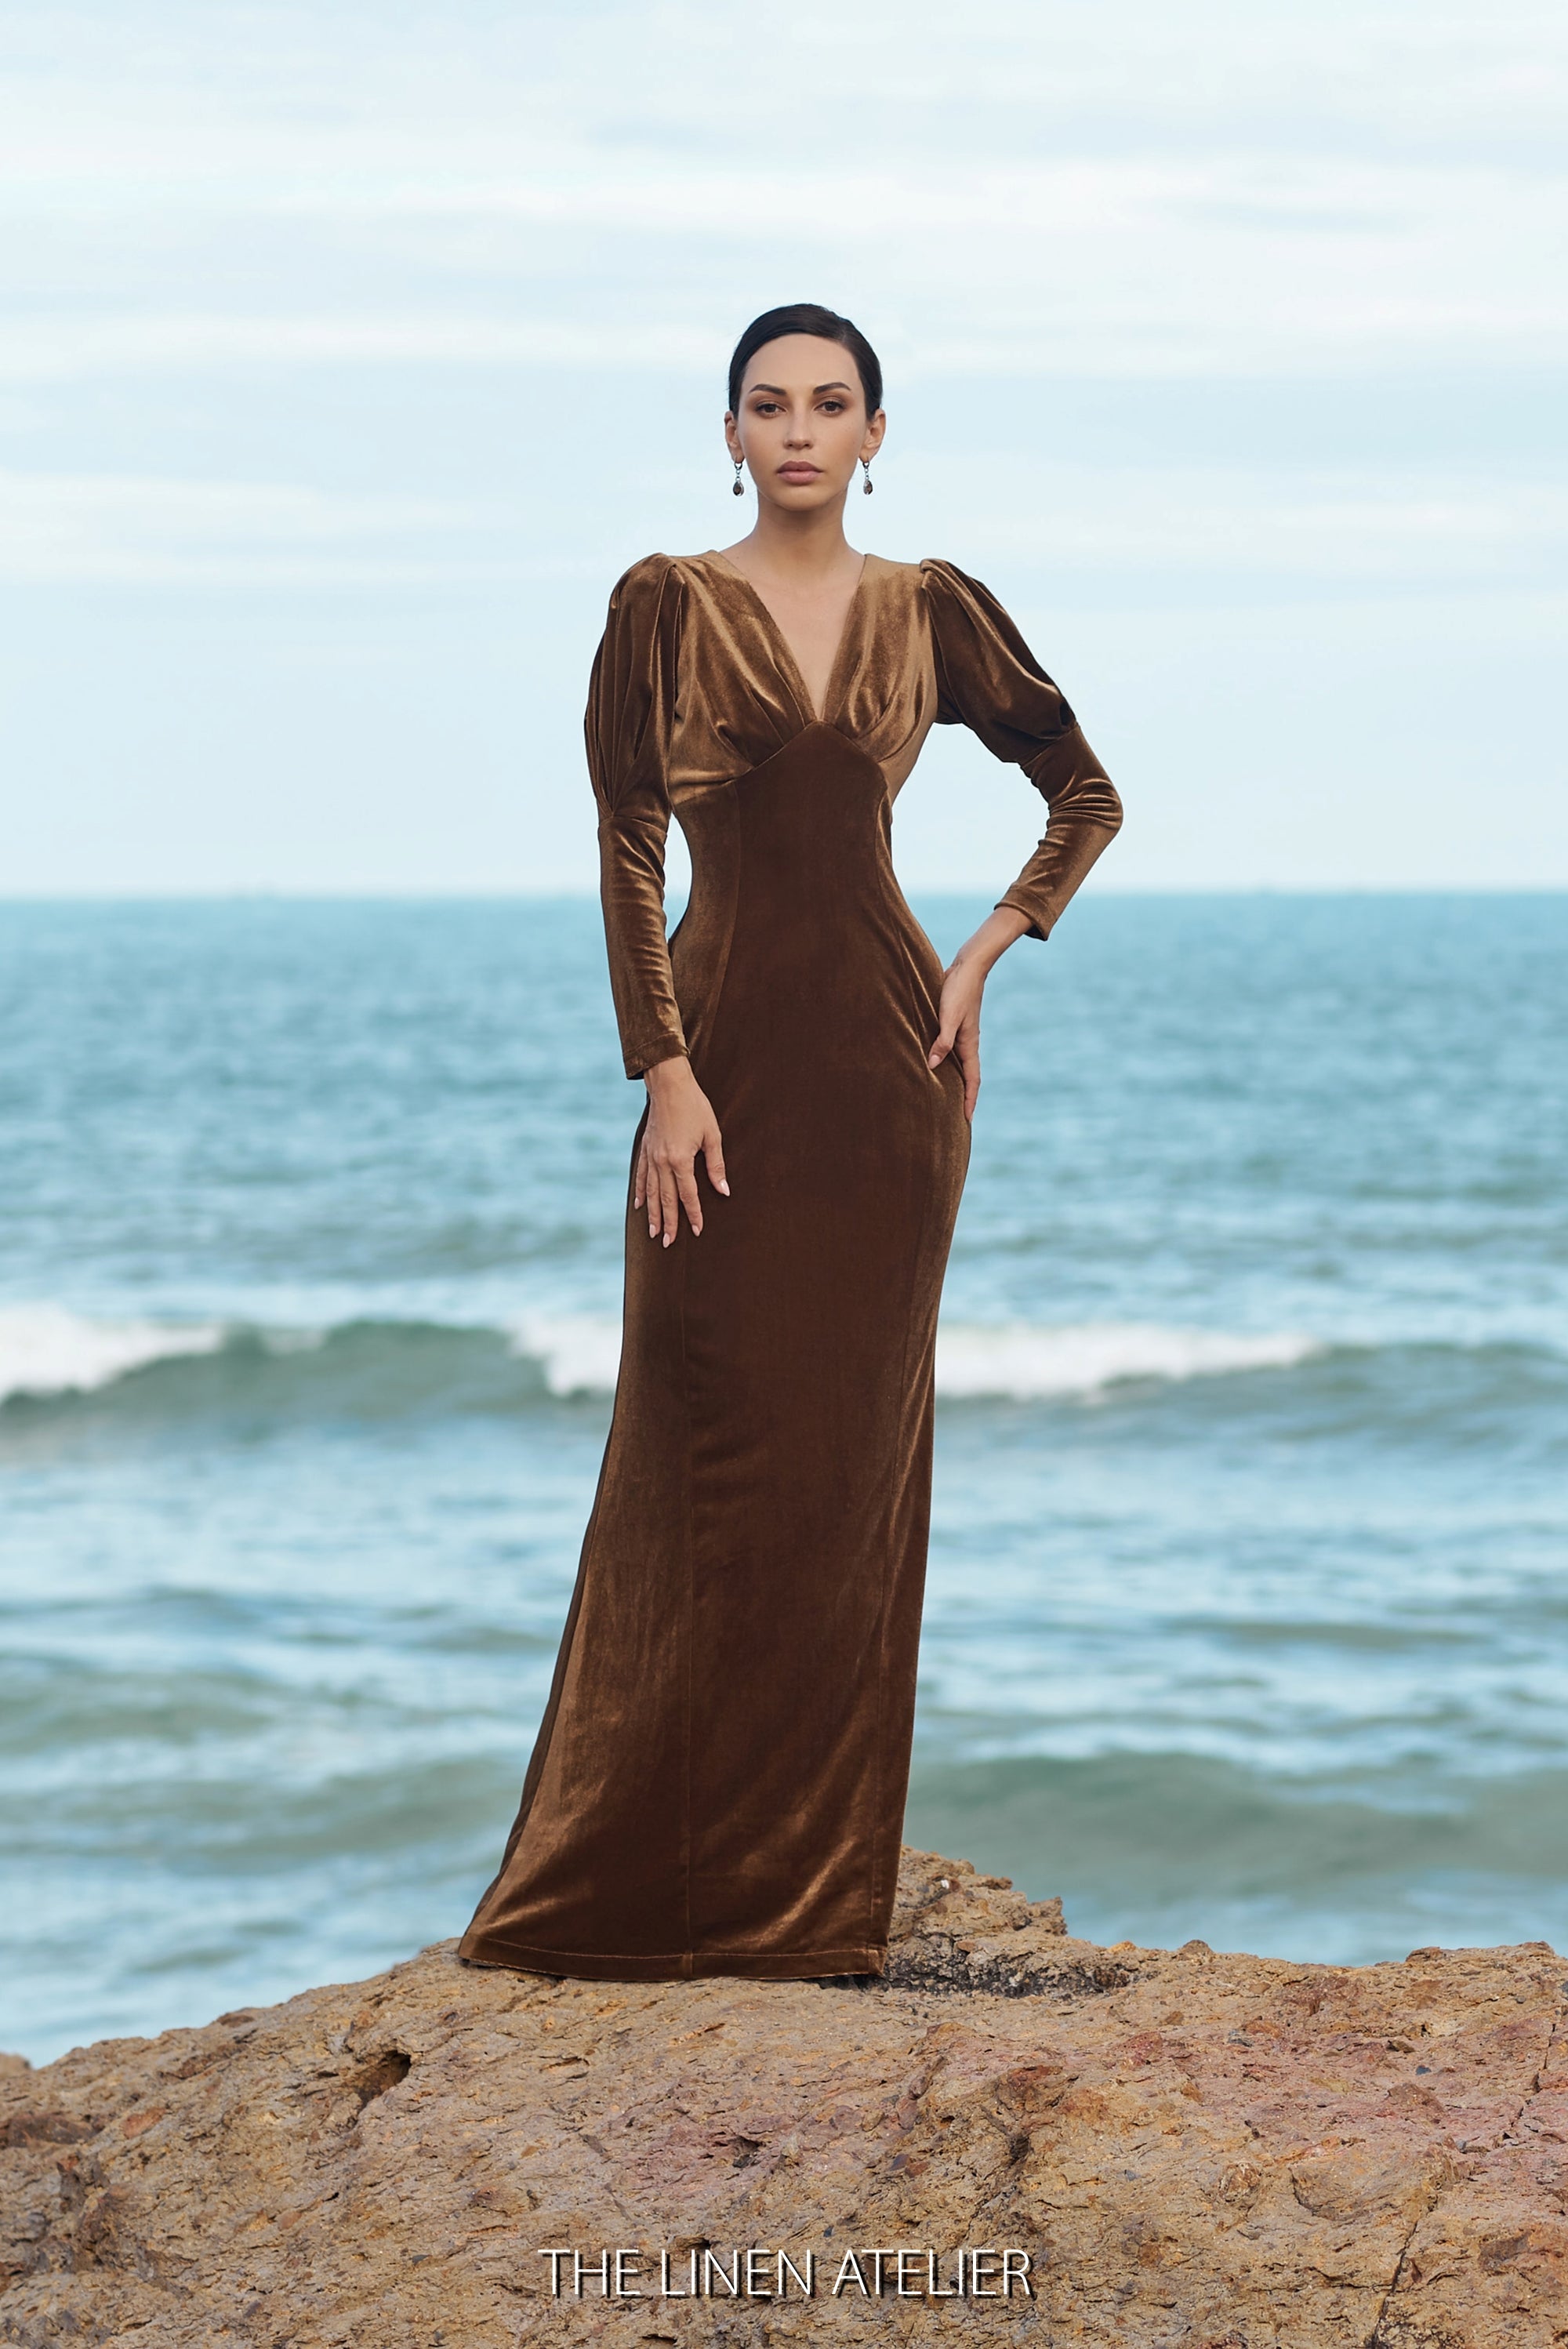 Elegant Long Sleeve V-neck Burgundy Velvet Formal Dress - VQ